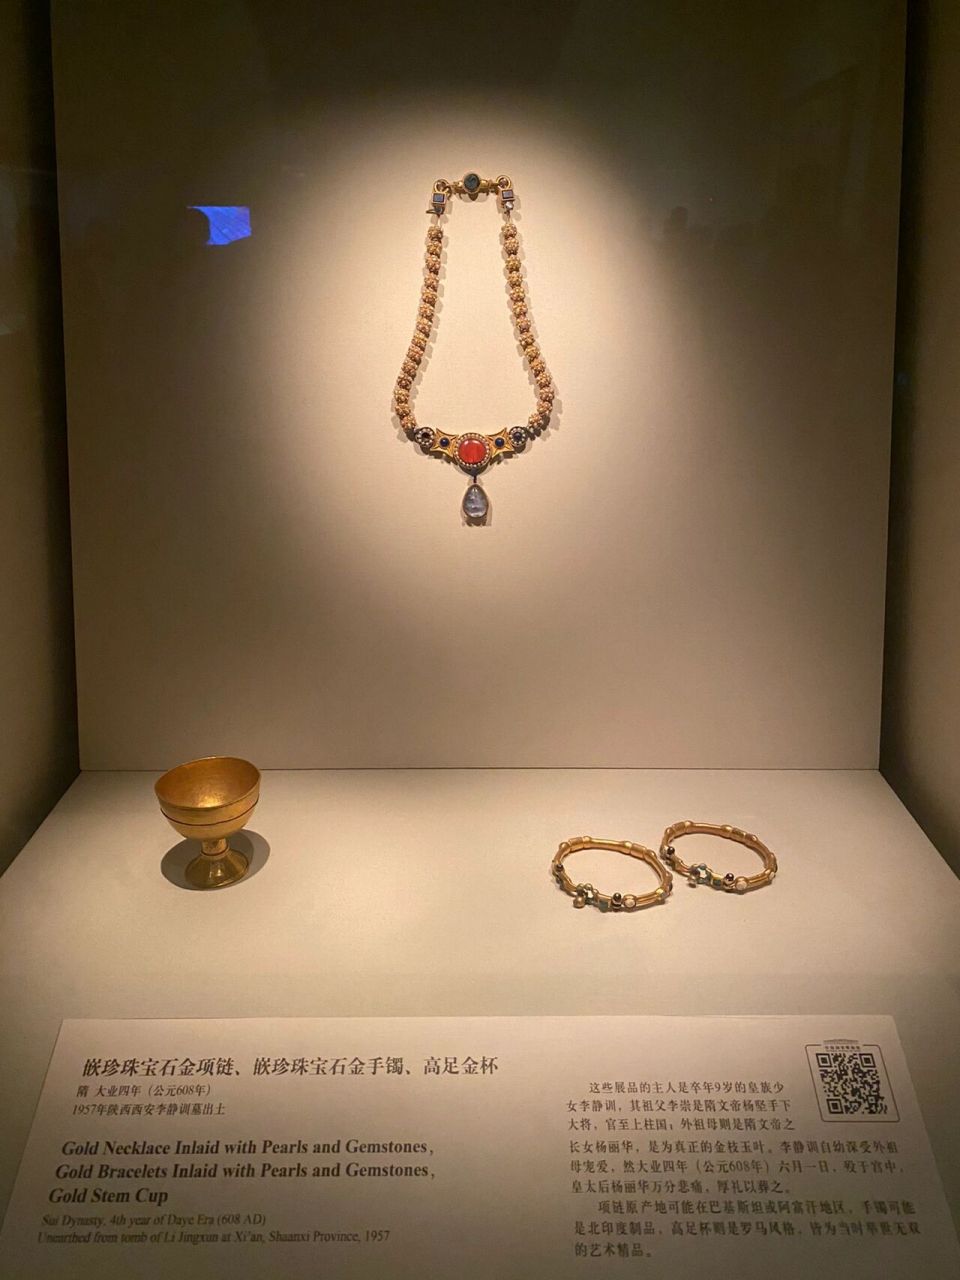 九岁皇家少女李静训的物品,价值上亿的项链 去国博拍的分享